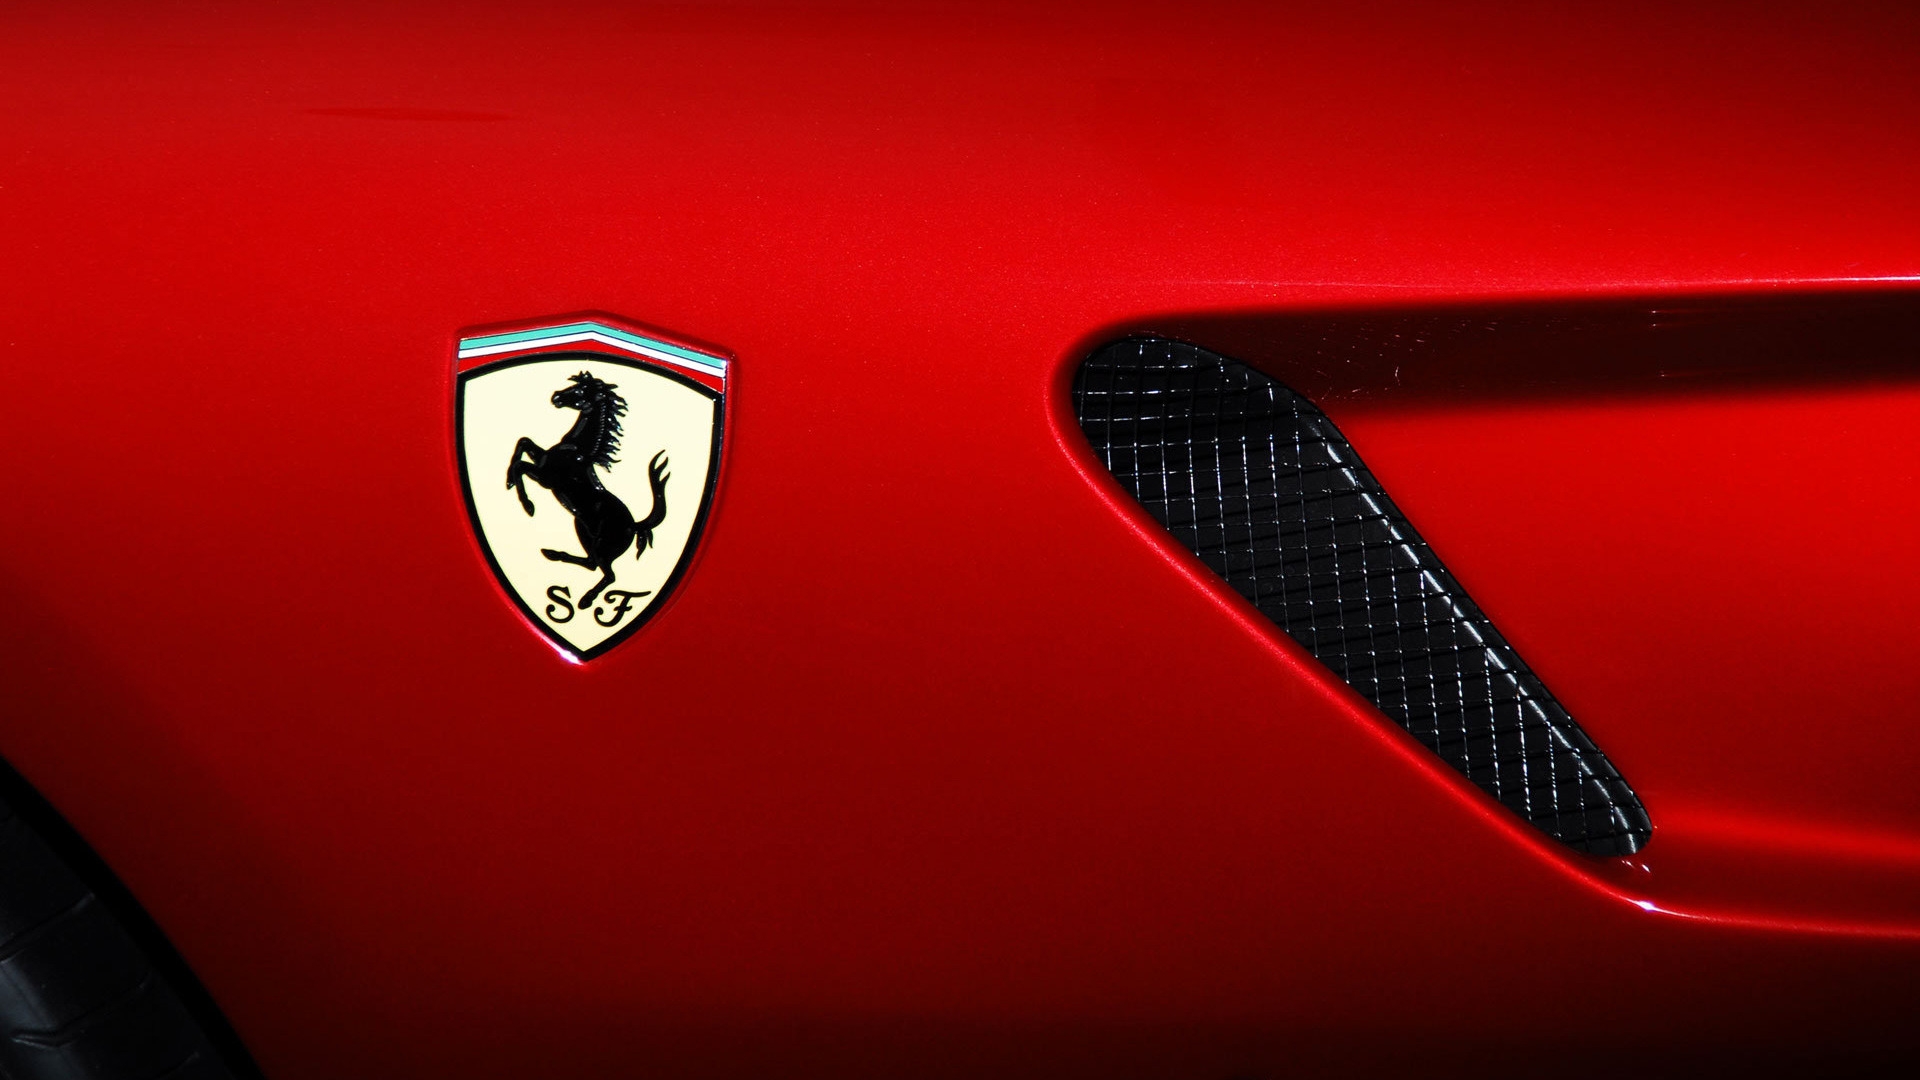 Ferrari Logo for 1920 x 1080 HDTV 1080p resolution